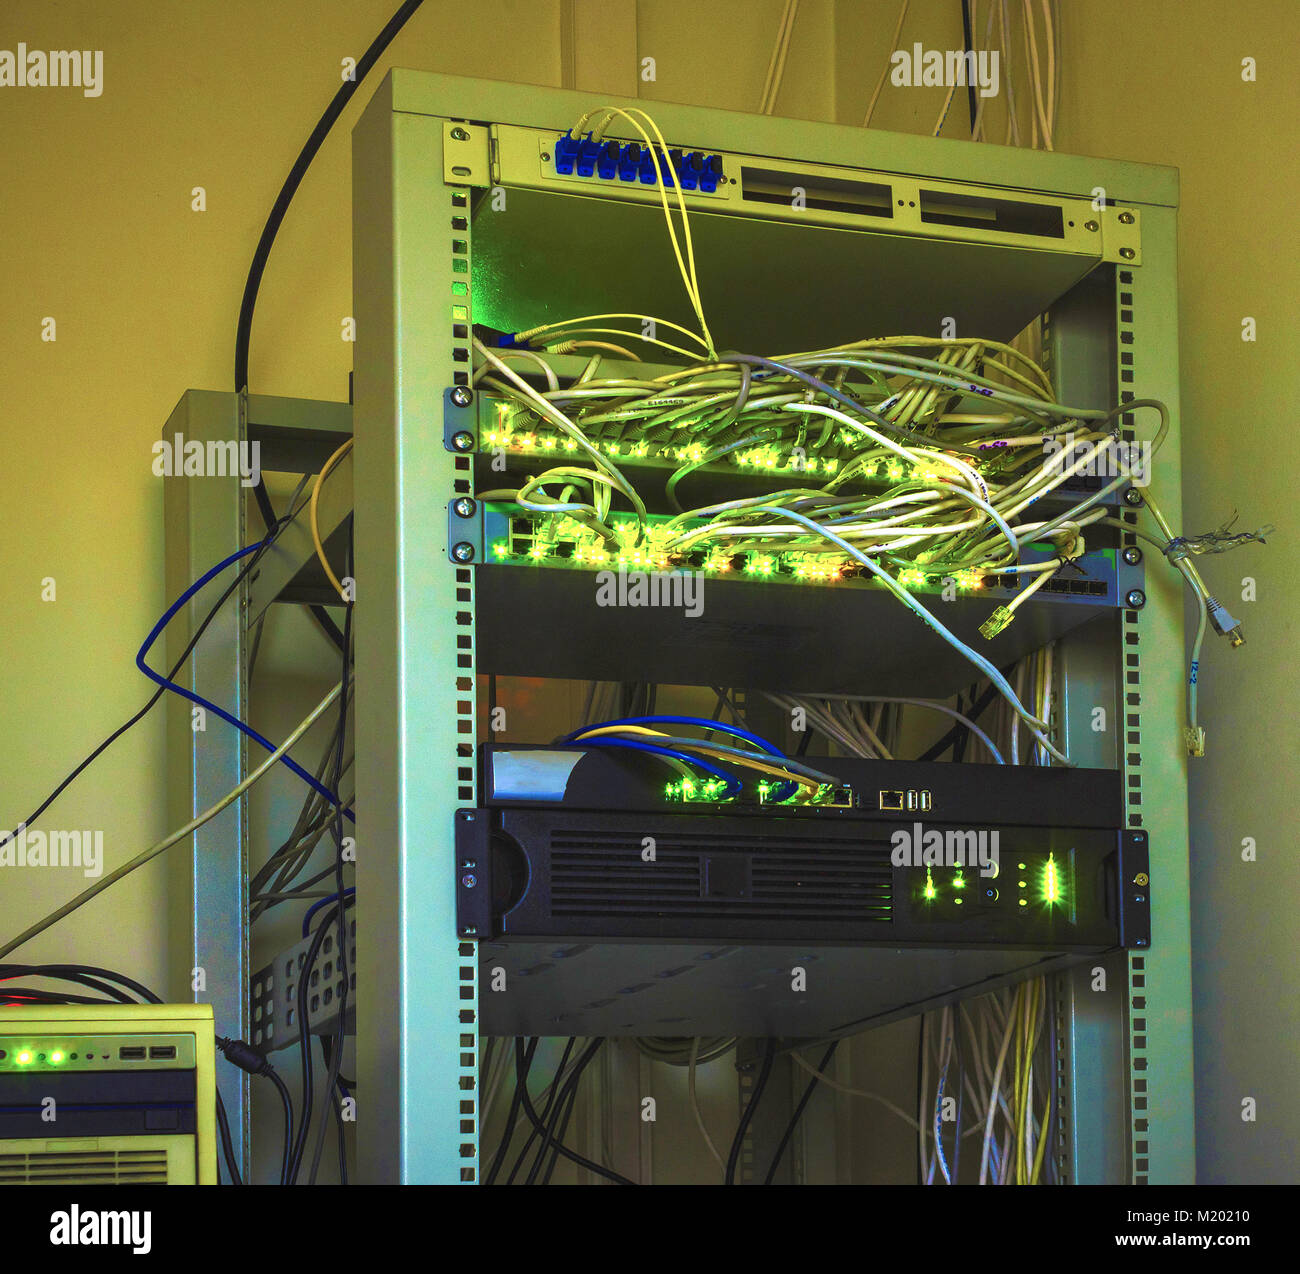 Serveur de réseau fibre optique Photo Stock - Alamy